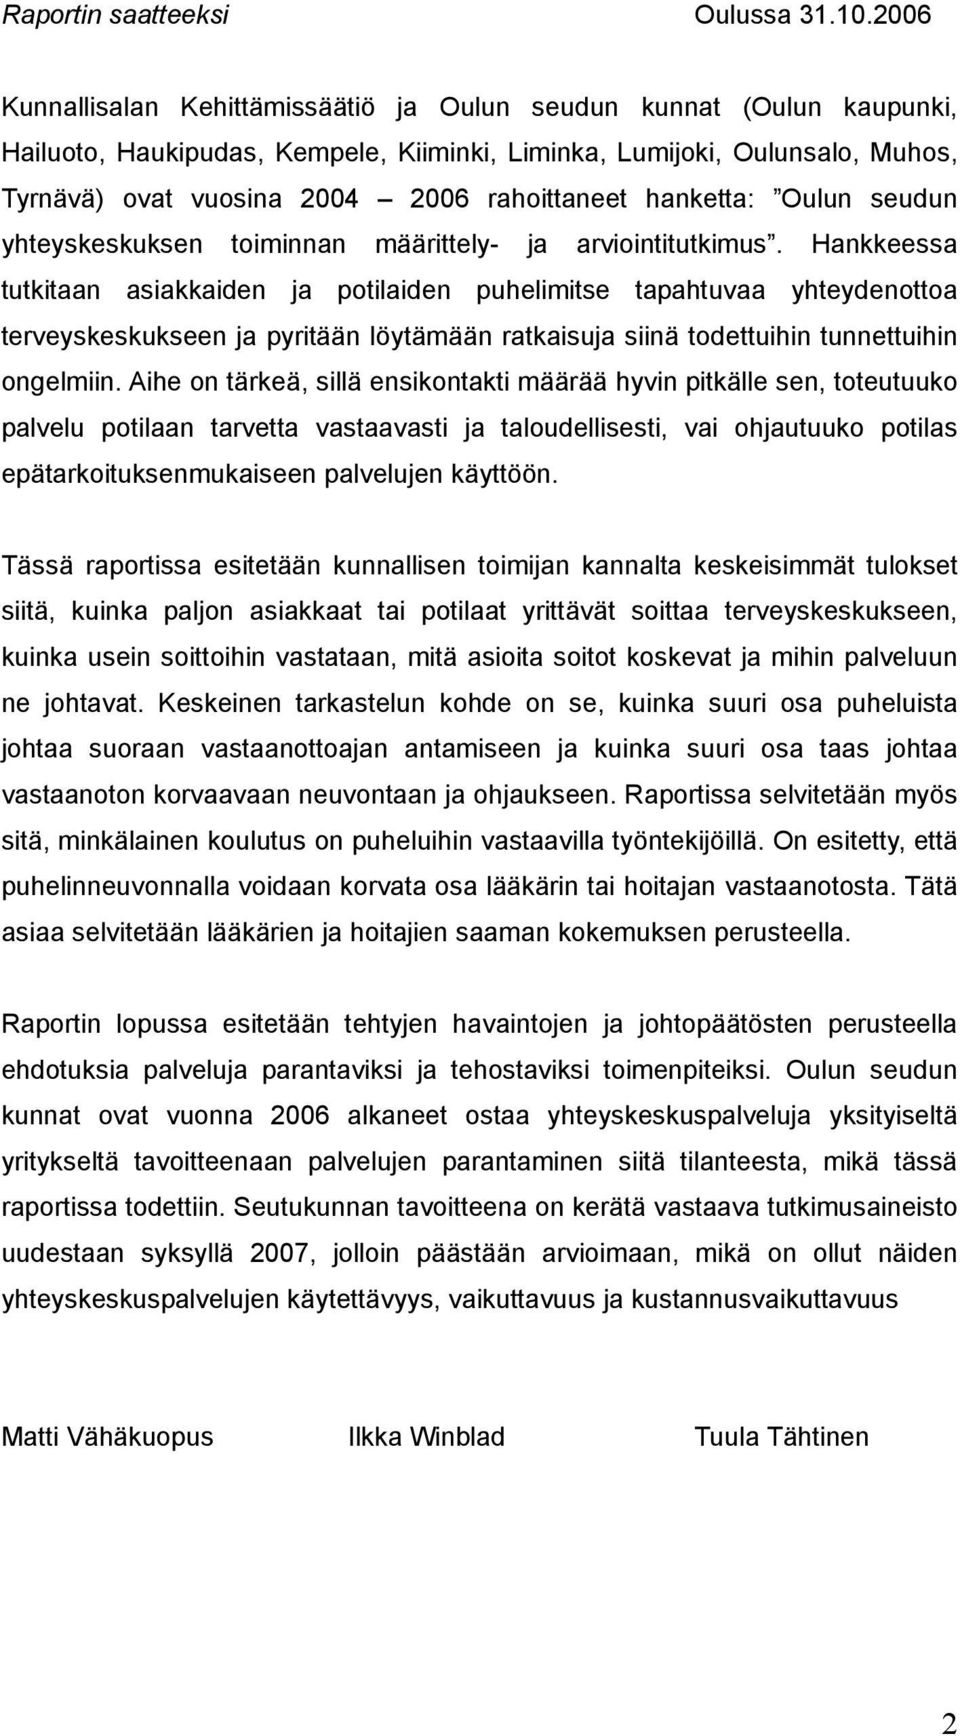 hanketta: Oulun seudun yhteyskeskuksen toiminnan määrittely- ja arviointitutkimus.